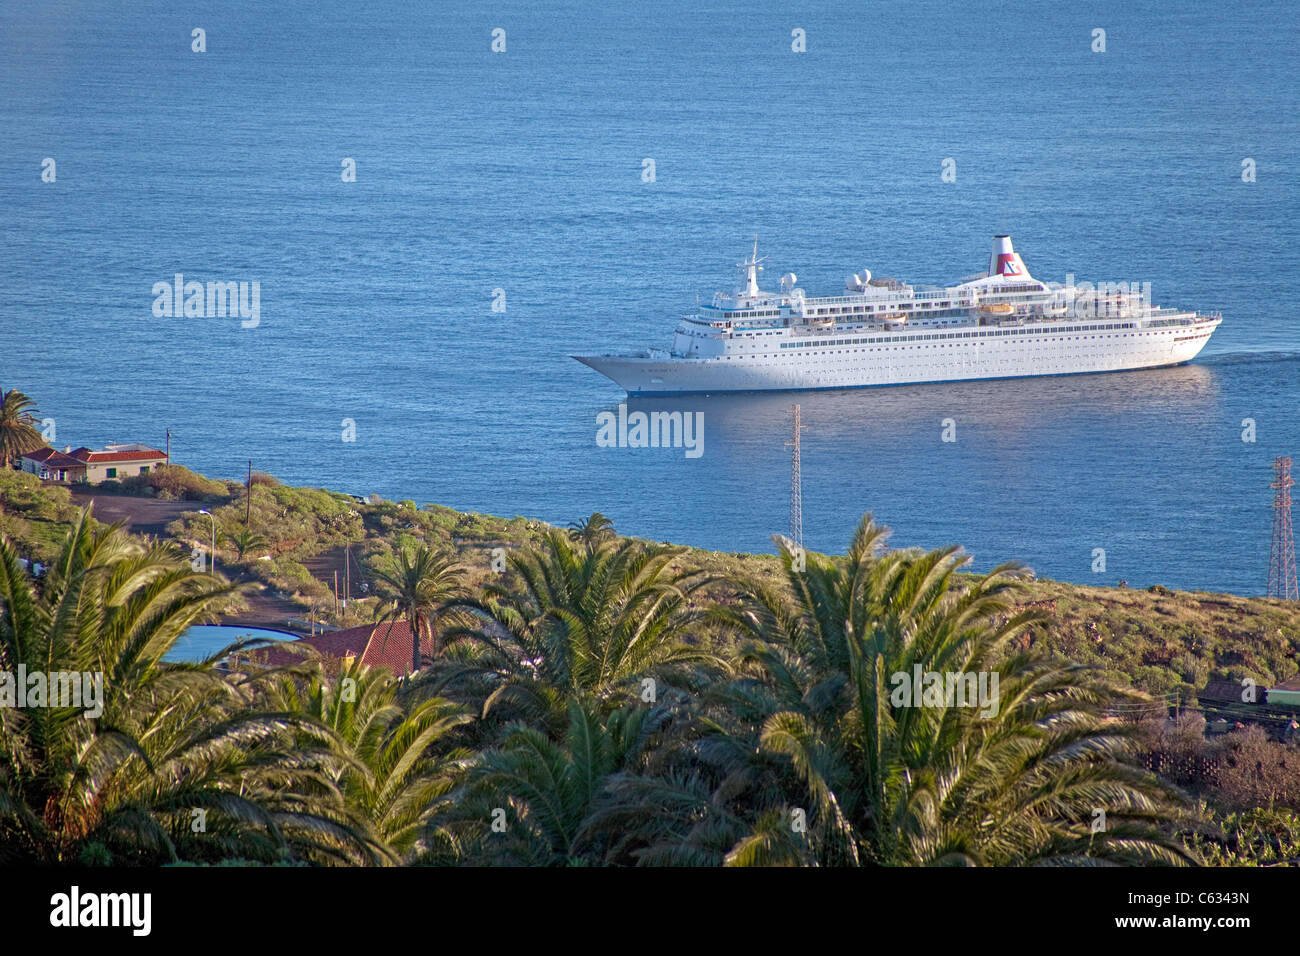 Le bateau de croisière sur la côte Boudicca près de Santa Cruz de La Palma, Canary Islands, Spain, Europe Banque D'Images